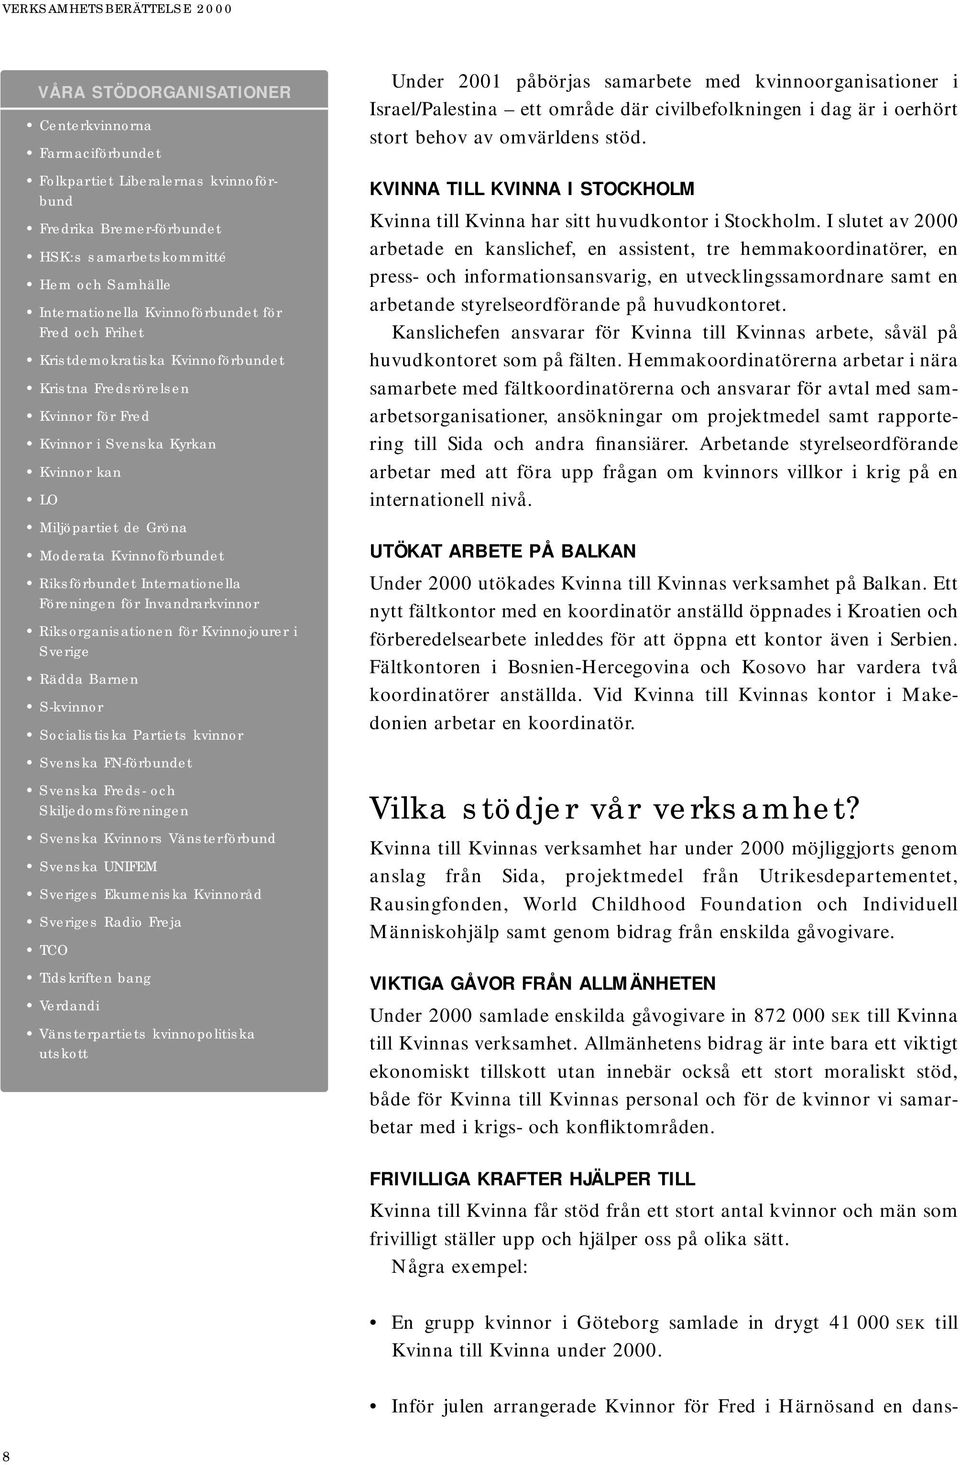 Kvinnoförbundet Riksförbundet Internationella Föreningen för Invandrarkvinnor Riksorganisationen för Kvinnojourer i Sverige Rädda Barnen S-kvinnor Socialistiska Partiets kvinnor Svenska FN-förbundet